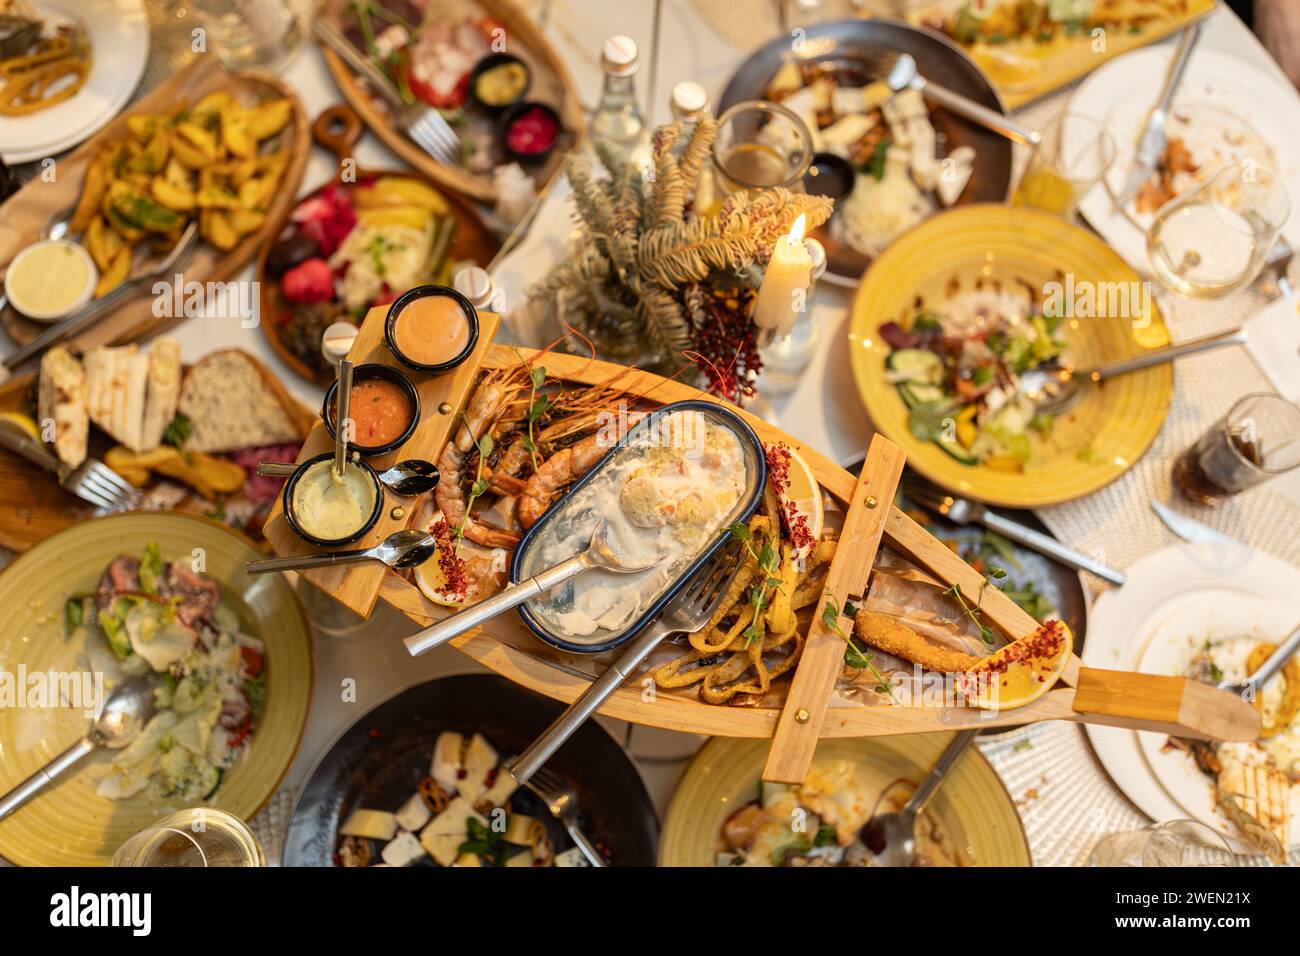 La cuisine thaïlandaise sur la table comprend des crevettes grillées, des bouillettes de poisson, des anneaux de calmars. Vue de dessus. Service de restaurant Banque D'Images